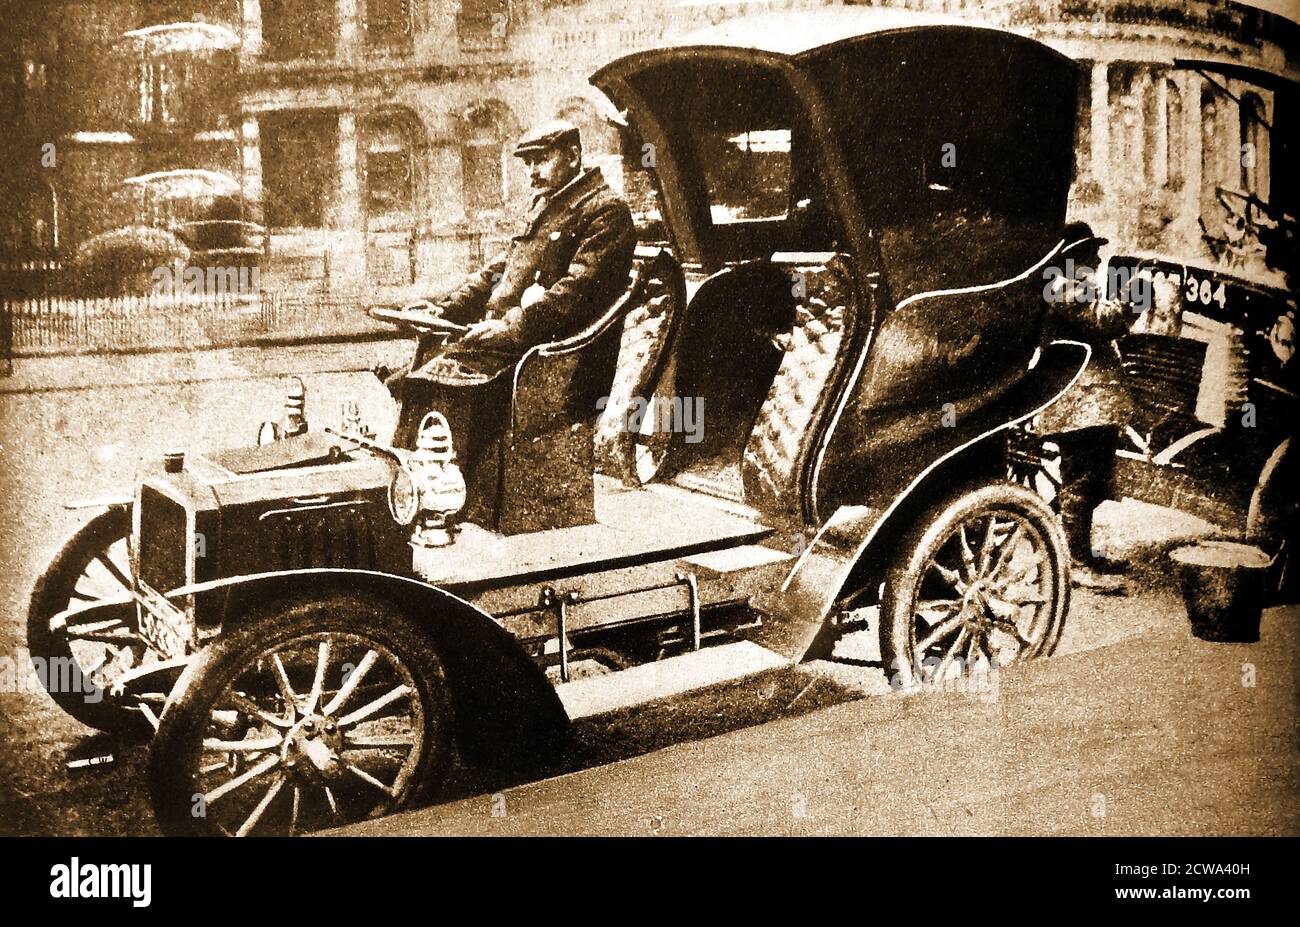 1904 Foto von Londons erstem motorisierten Taxi mit einem Hansom-Fahrerhaus auf Rädern, im Besitz der City & Suburban Cab Co. Das erste benzinbetriebene Taxi in London (1903) war ein französisch gebautes Prunel. Britische Marken enthalten ein paar rationale, Simplex und Herald Fahrzeuge. Frühere ‘Hummingbirds’ (elektrisch betriebene Fahrzeuge), die nach dem Klang, den sie machten, benannt wurden, wurden 1897 eingeführt Stockfoto